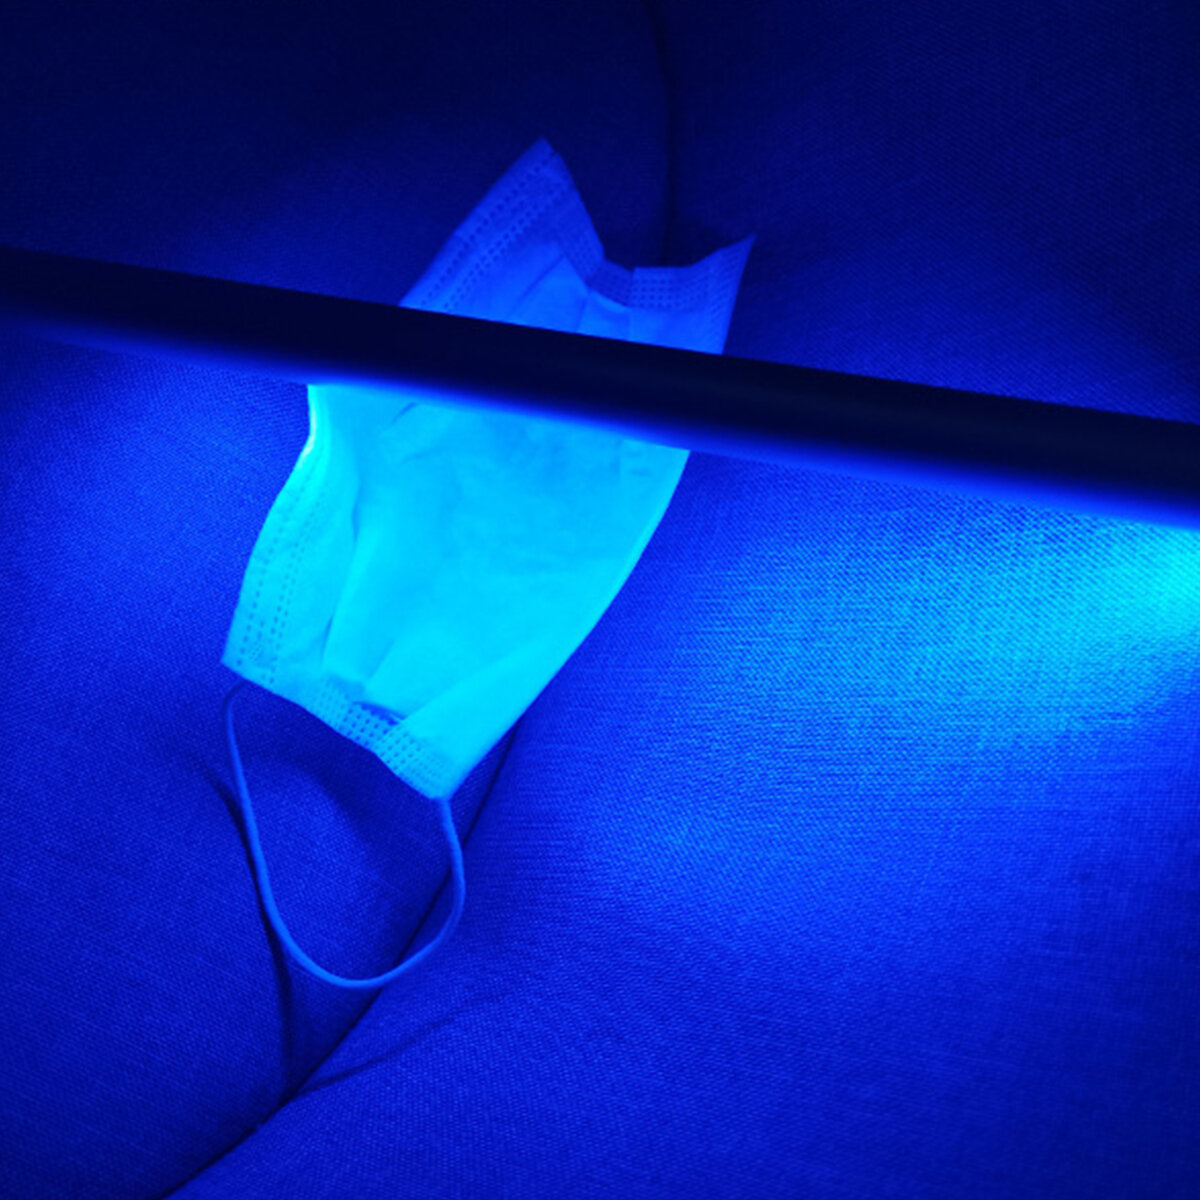 Handheld Ultraviolet Sterilization Rod Portable UV Lamp USB Charging LED Cabinet Light for Home Kitc